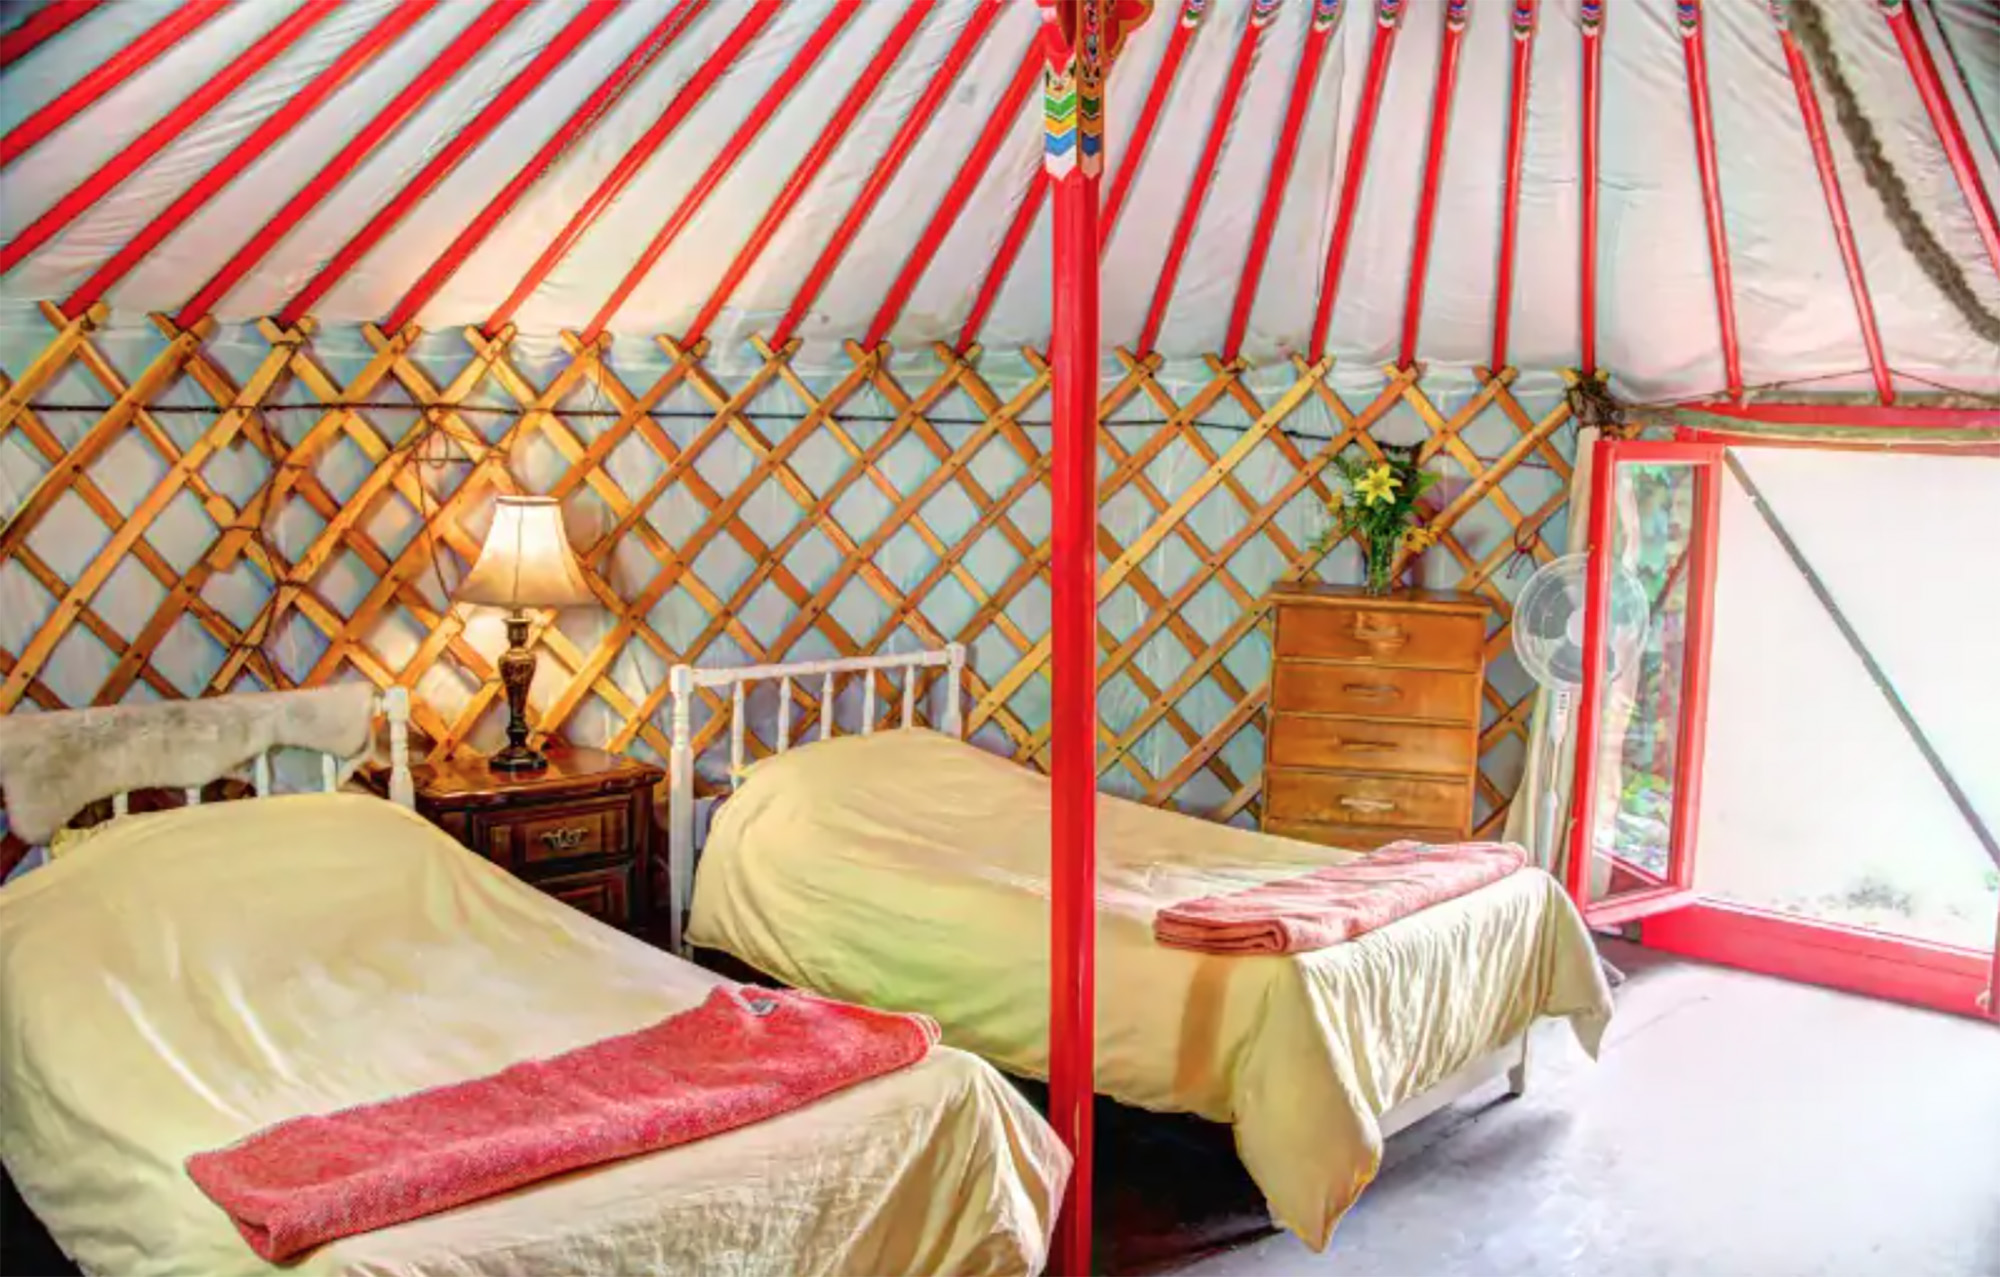 yurt rental for glamping in Ontario